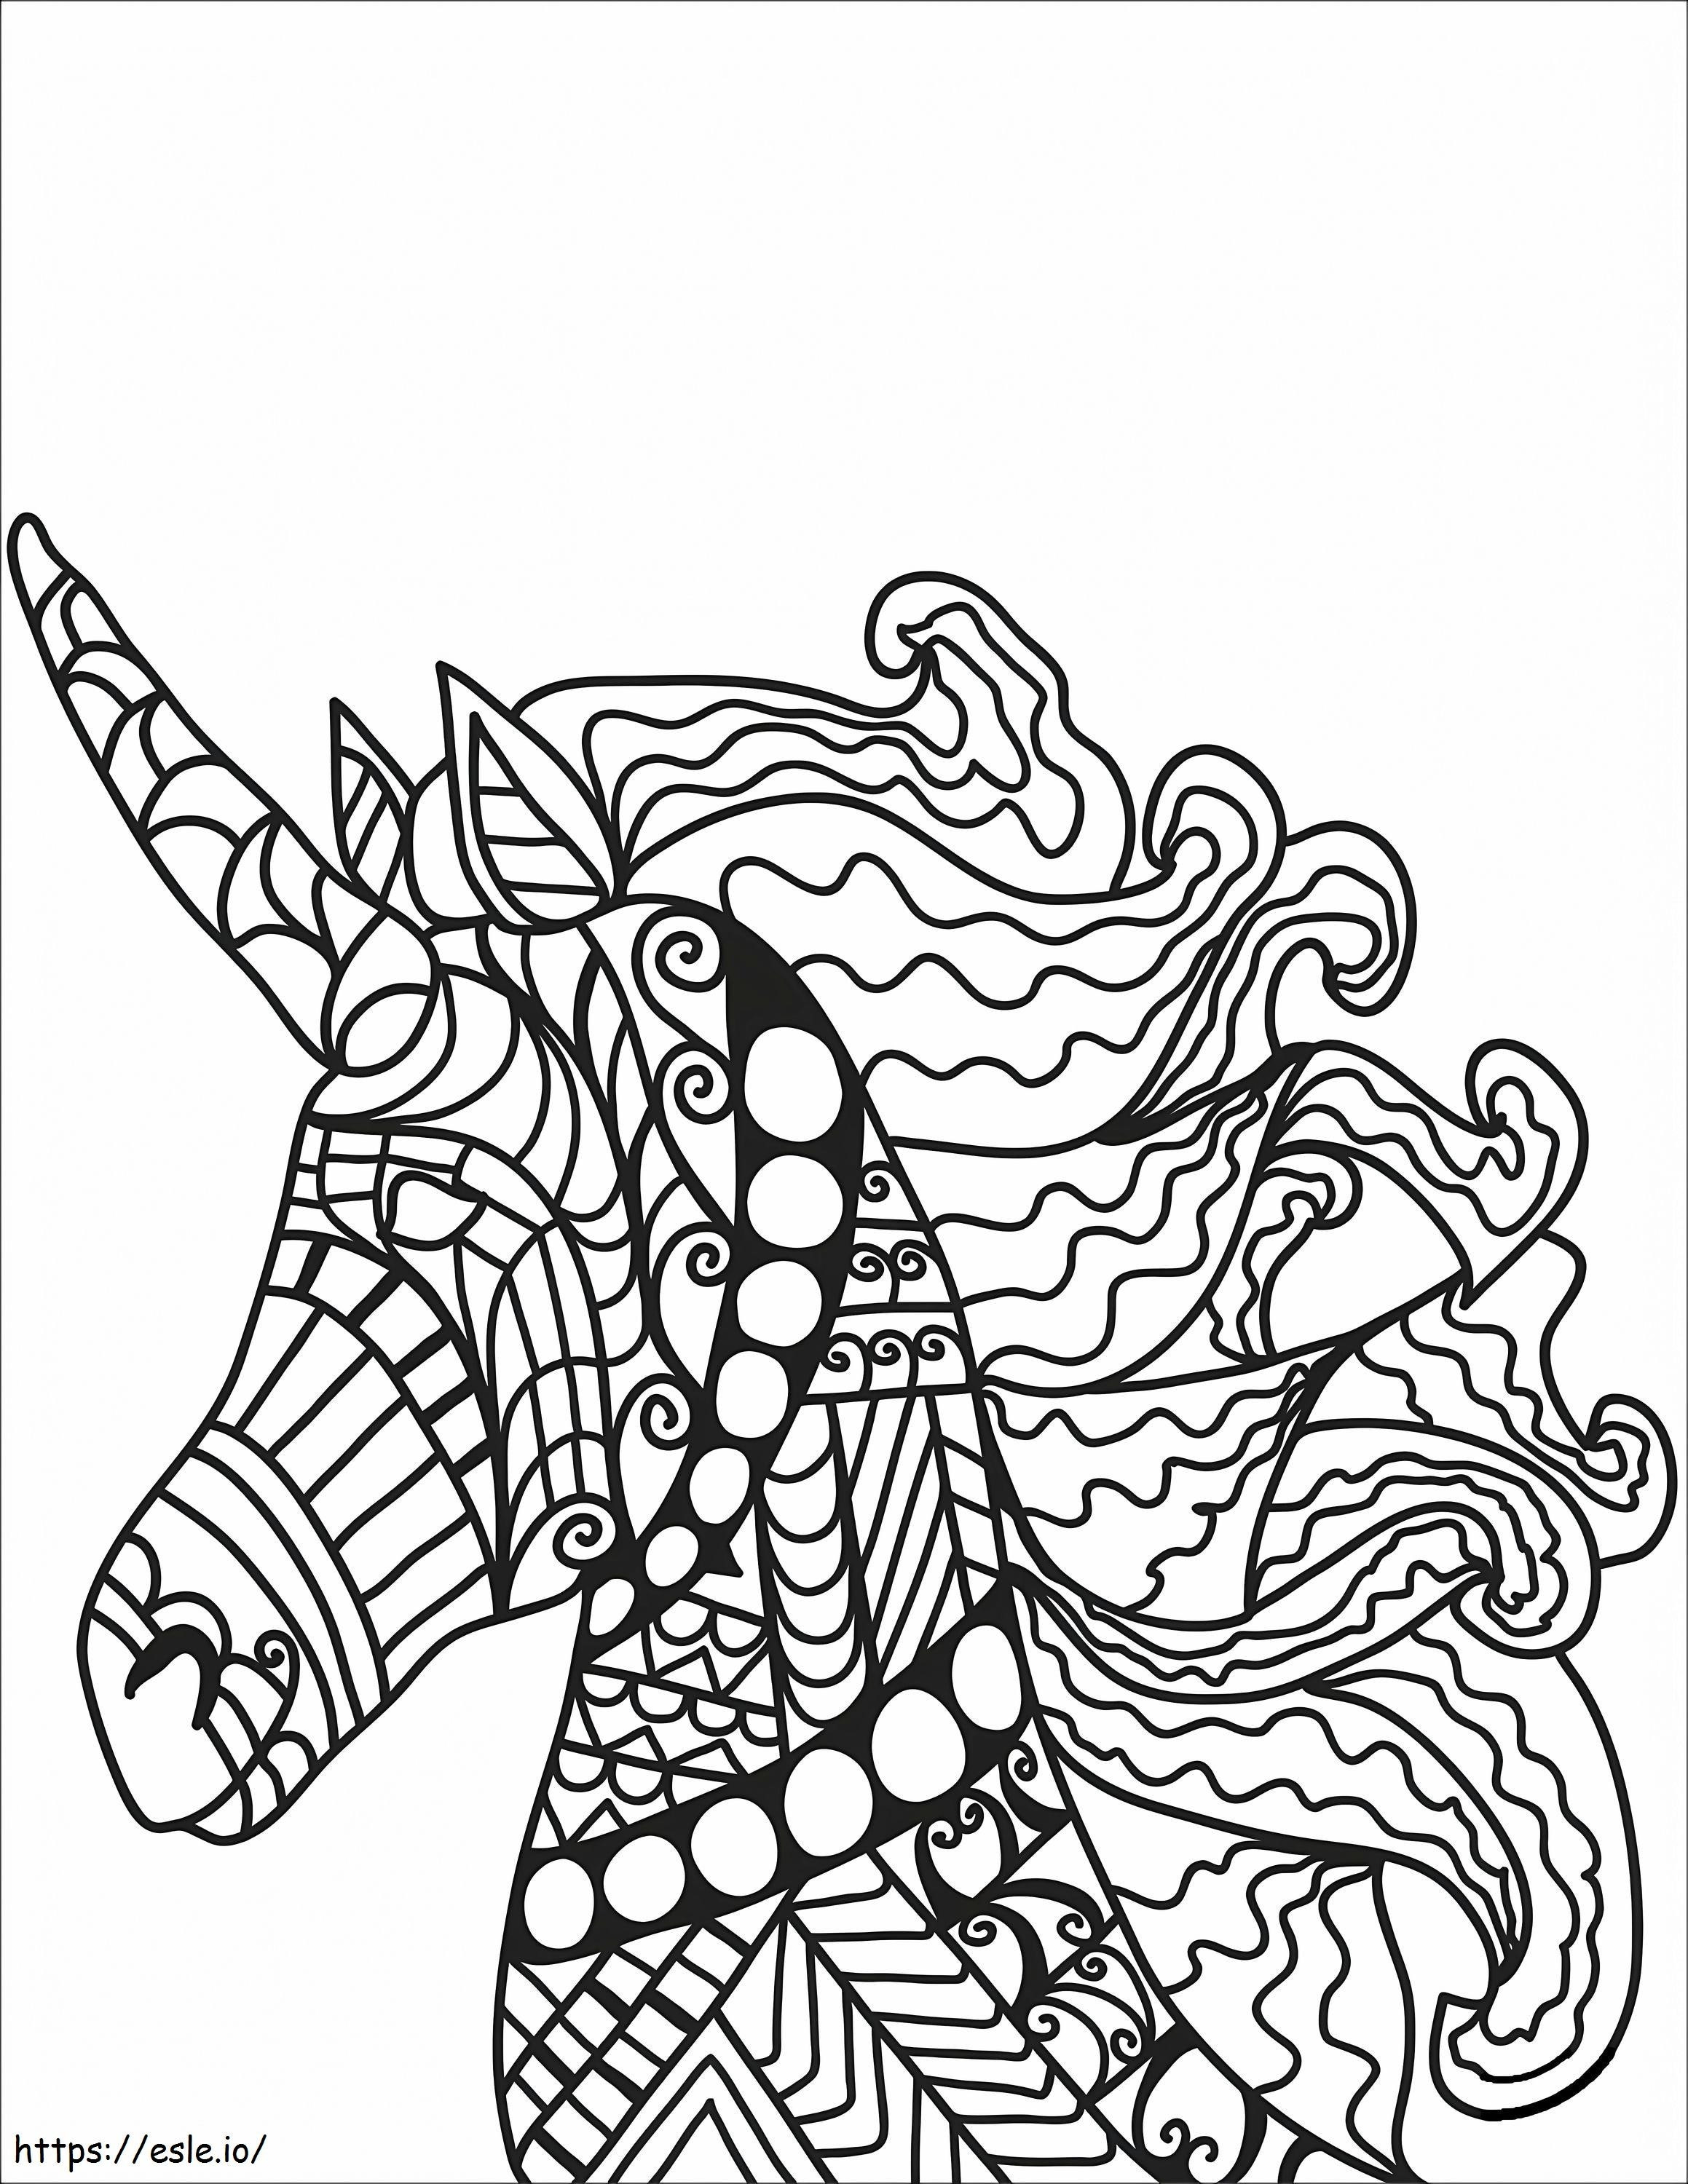 1576117684 Unicornio Zentangle 27 para colorear